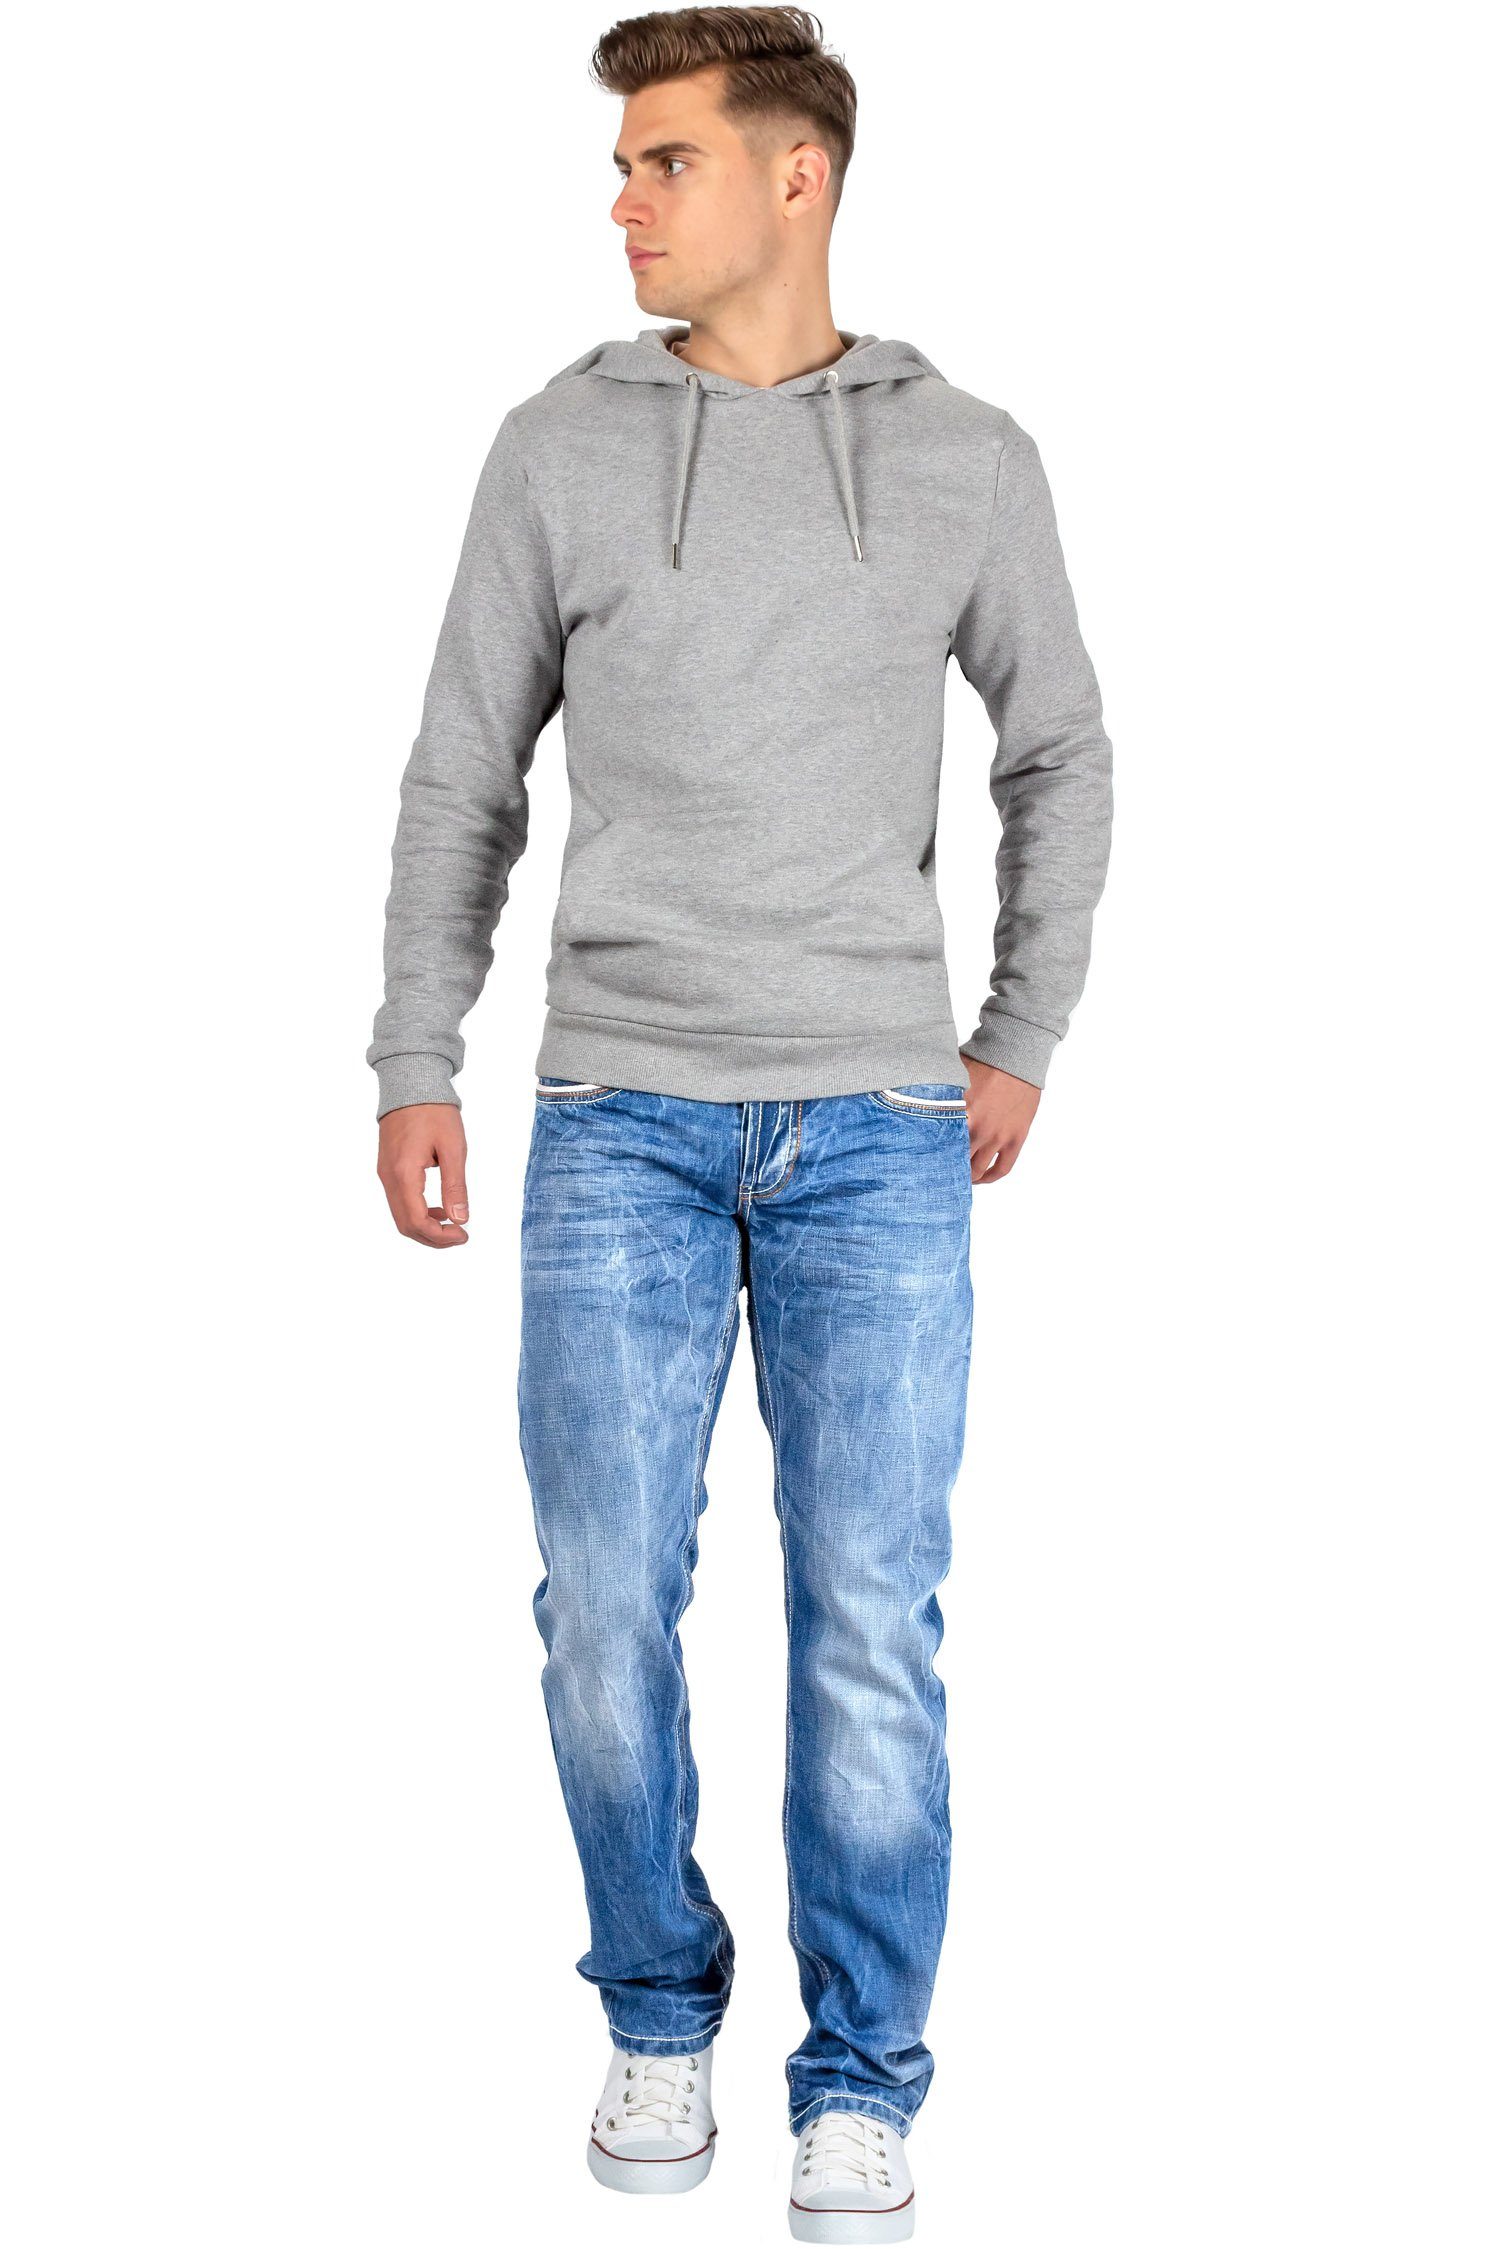 Cipo & Stonewashed mit Regular-fit-Jeans Ziernaht Effekt Baxx weißer BA-C0595 Hose